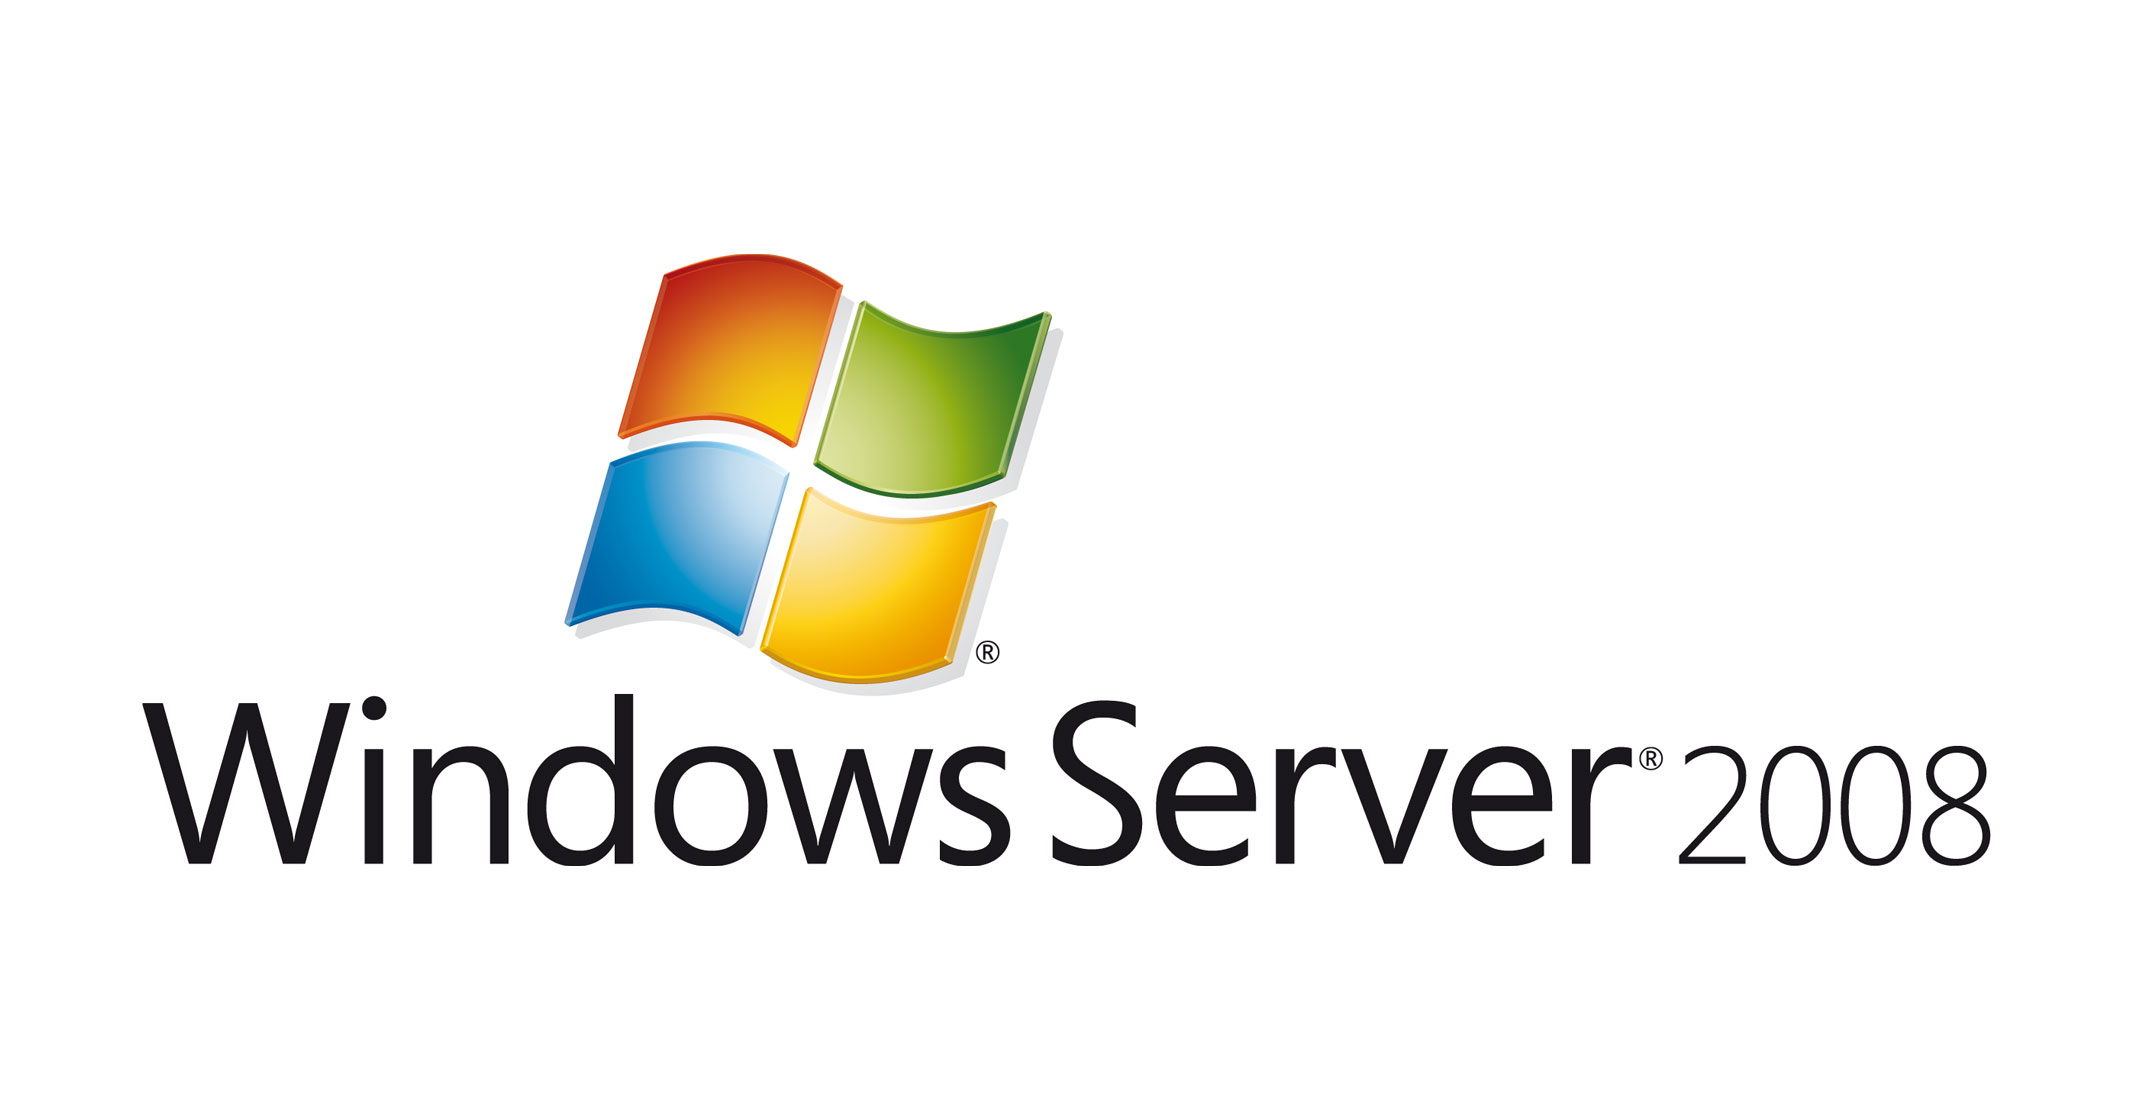 Vine sfârşitul Windows Server 2008! V-aţi pregătit migrarea la o nouă versiune?